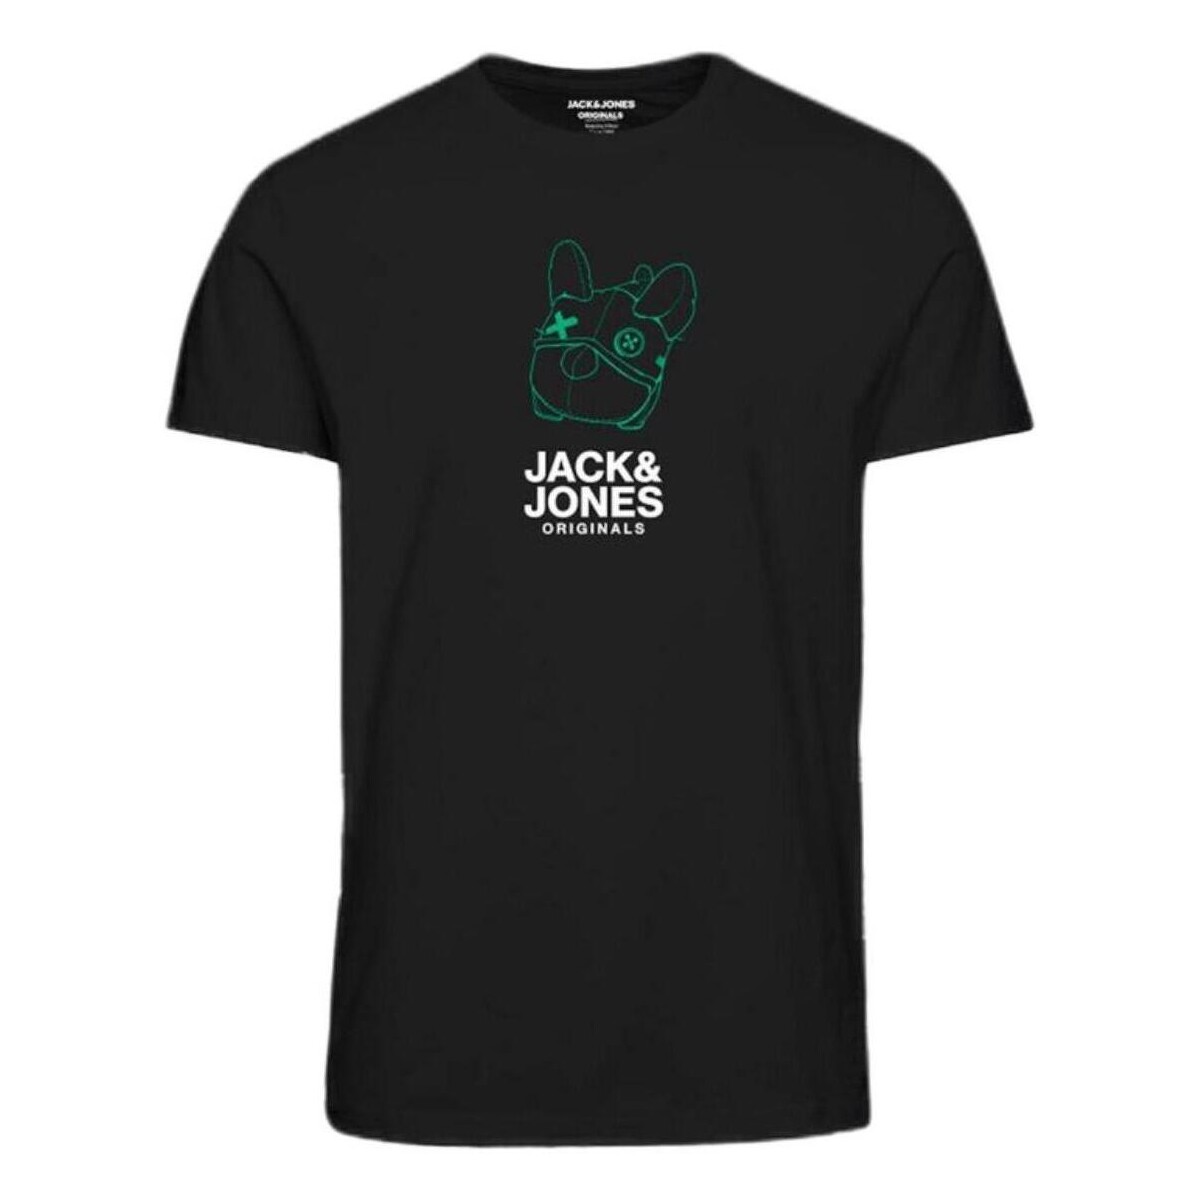 textil Dreng T-shirts m. korte ærmer Jack & Jones  Sort